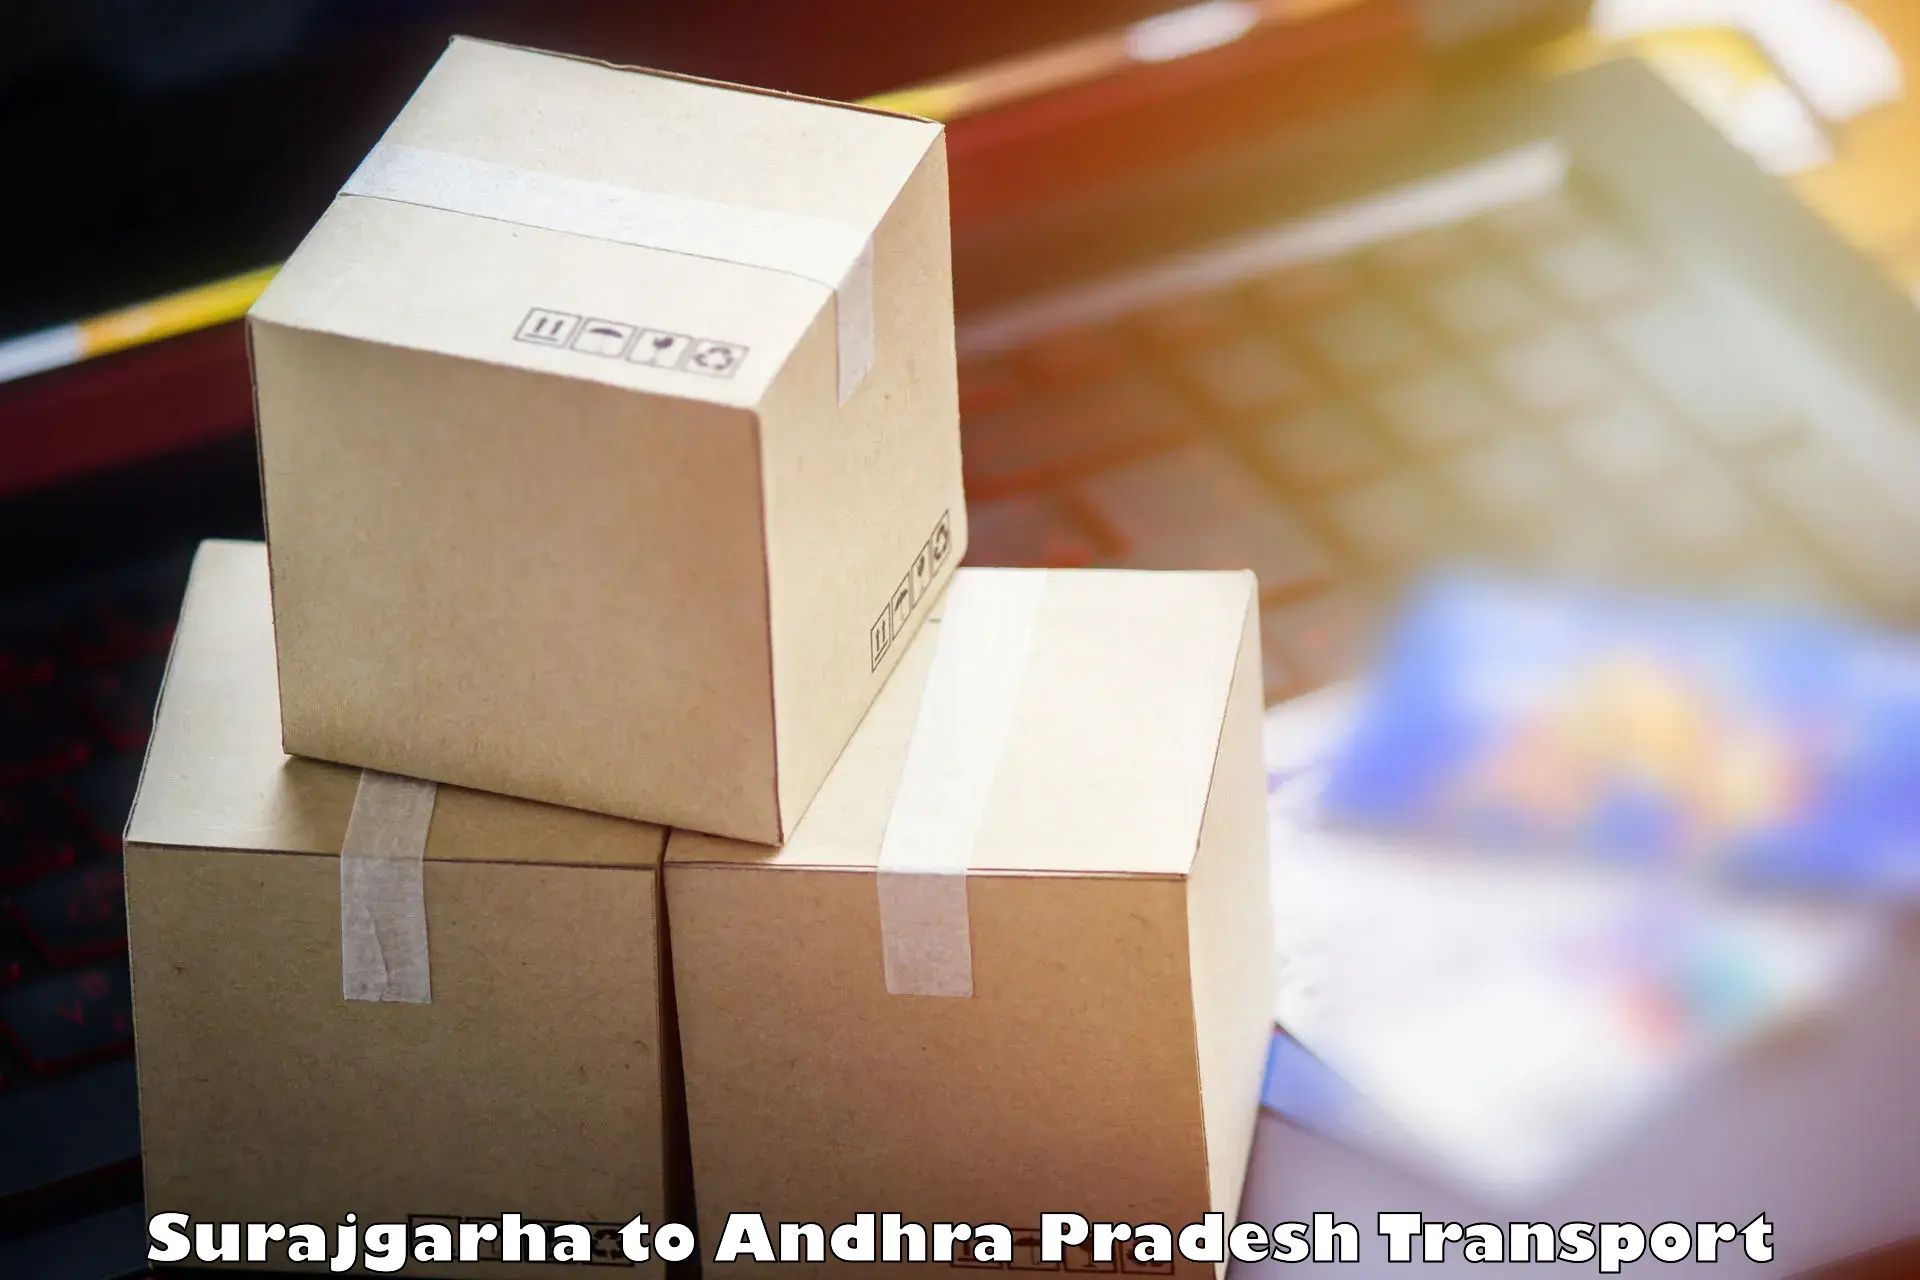 Cargo transport services Surajgarha to Martur